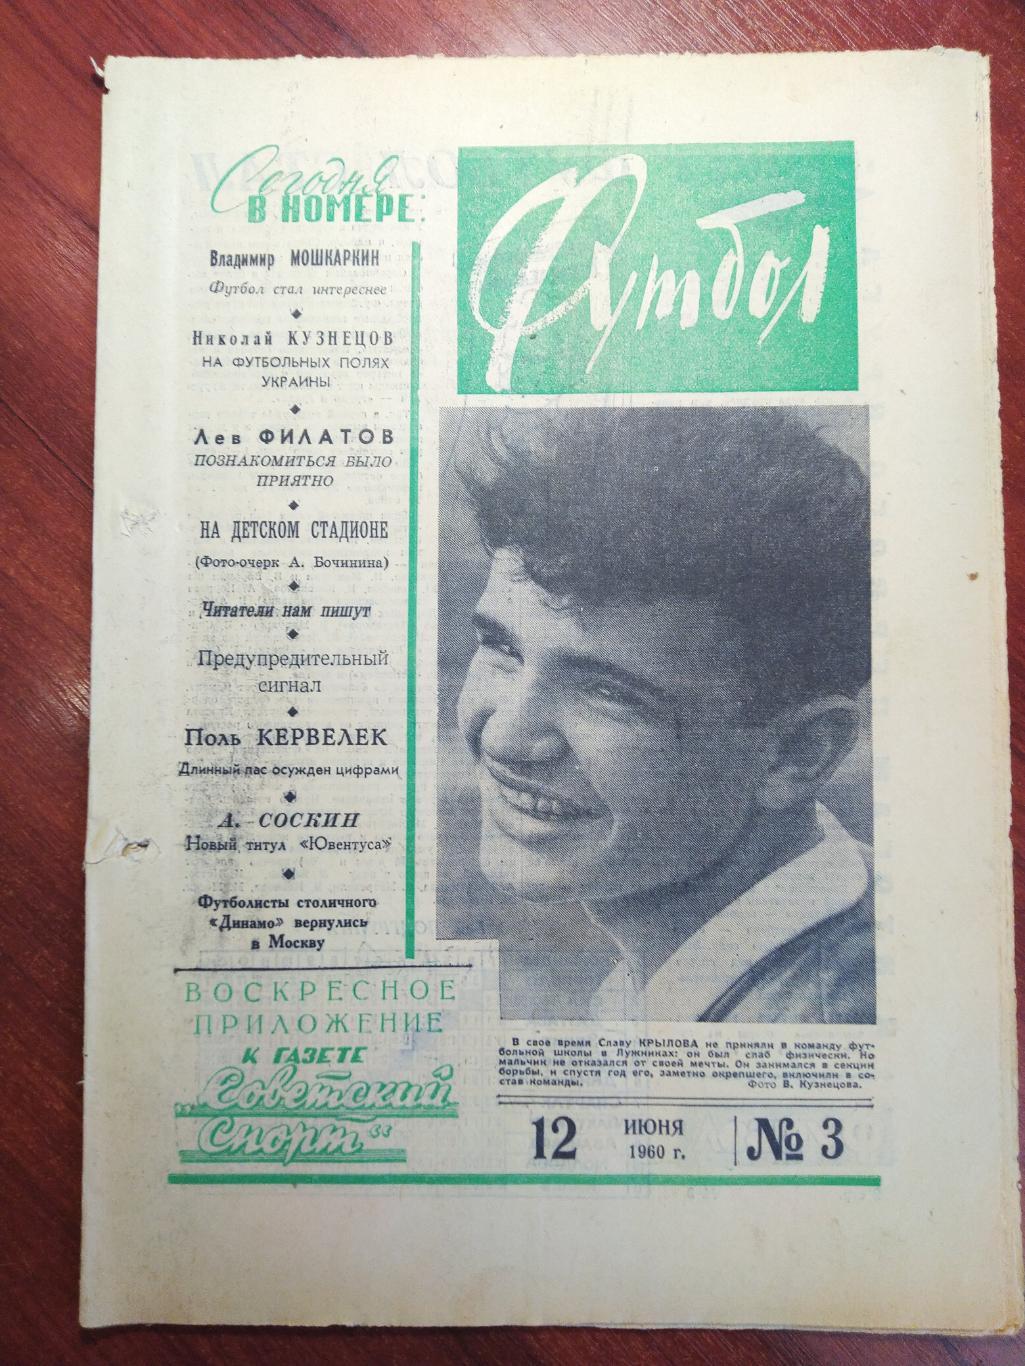 Еженедельник Футбол №3 от 12 июня 1960.Первый год выпуска! Московский выпуск